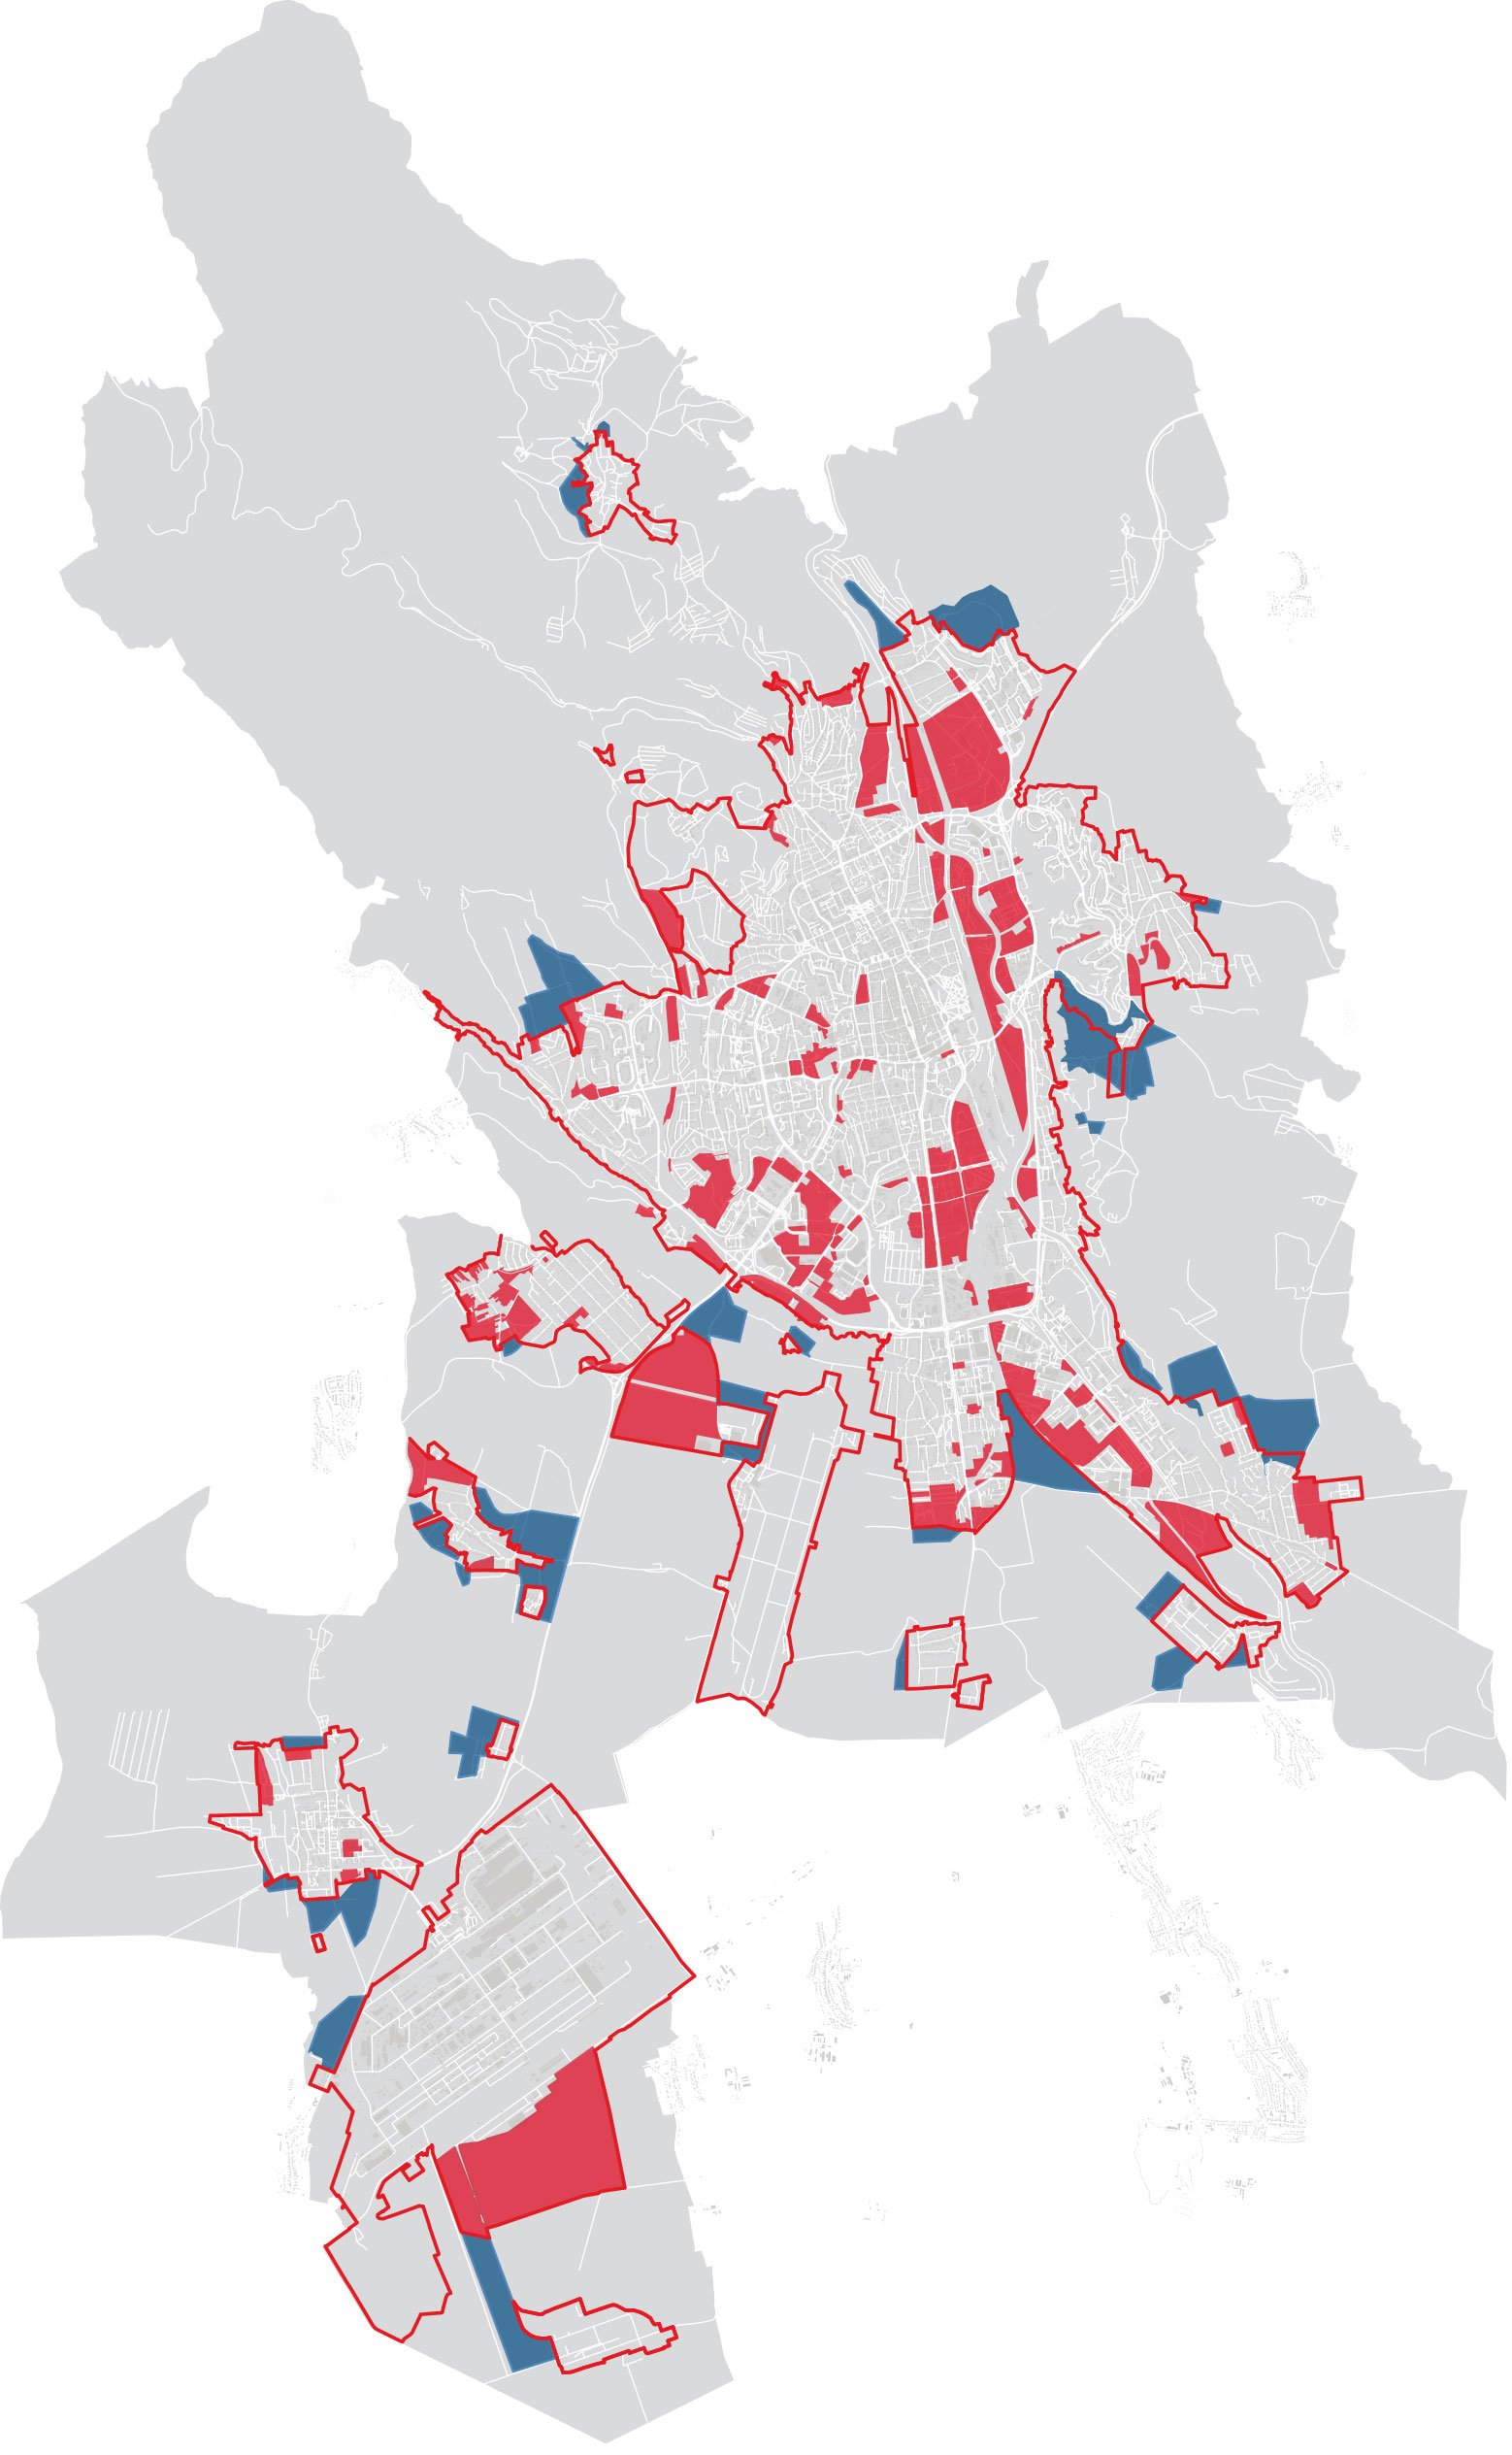 Variant B návrhu kompaktného mesta. Červené plochy predstavujú územie začlenené do rozvoja modré naopak vylúčené z rozvoja. Červená línia predstavuje neprekročiteľnú hranicu kompaktného mesta.